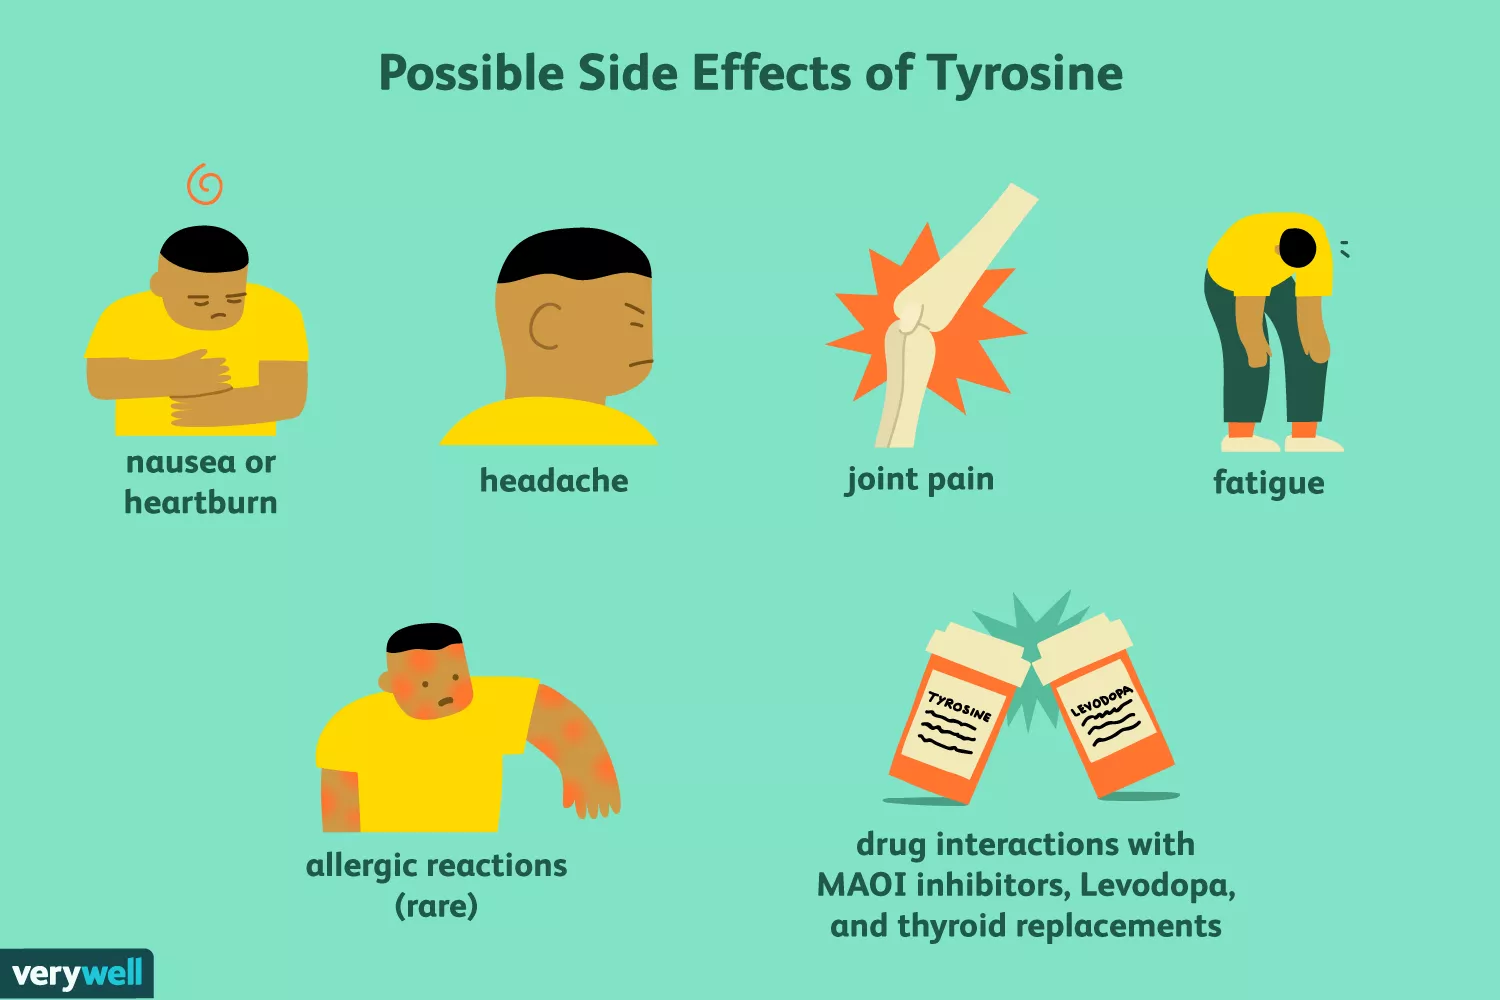 Possible side effects of tyrosine